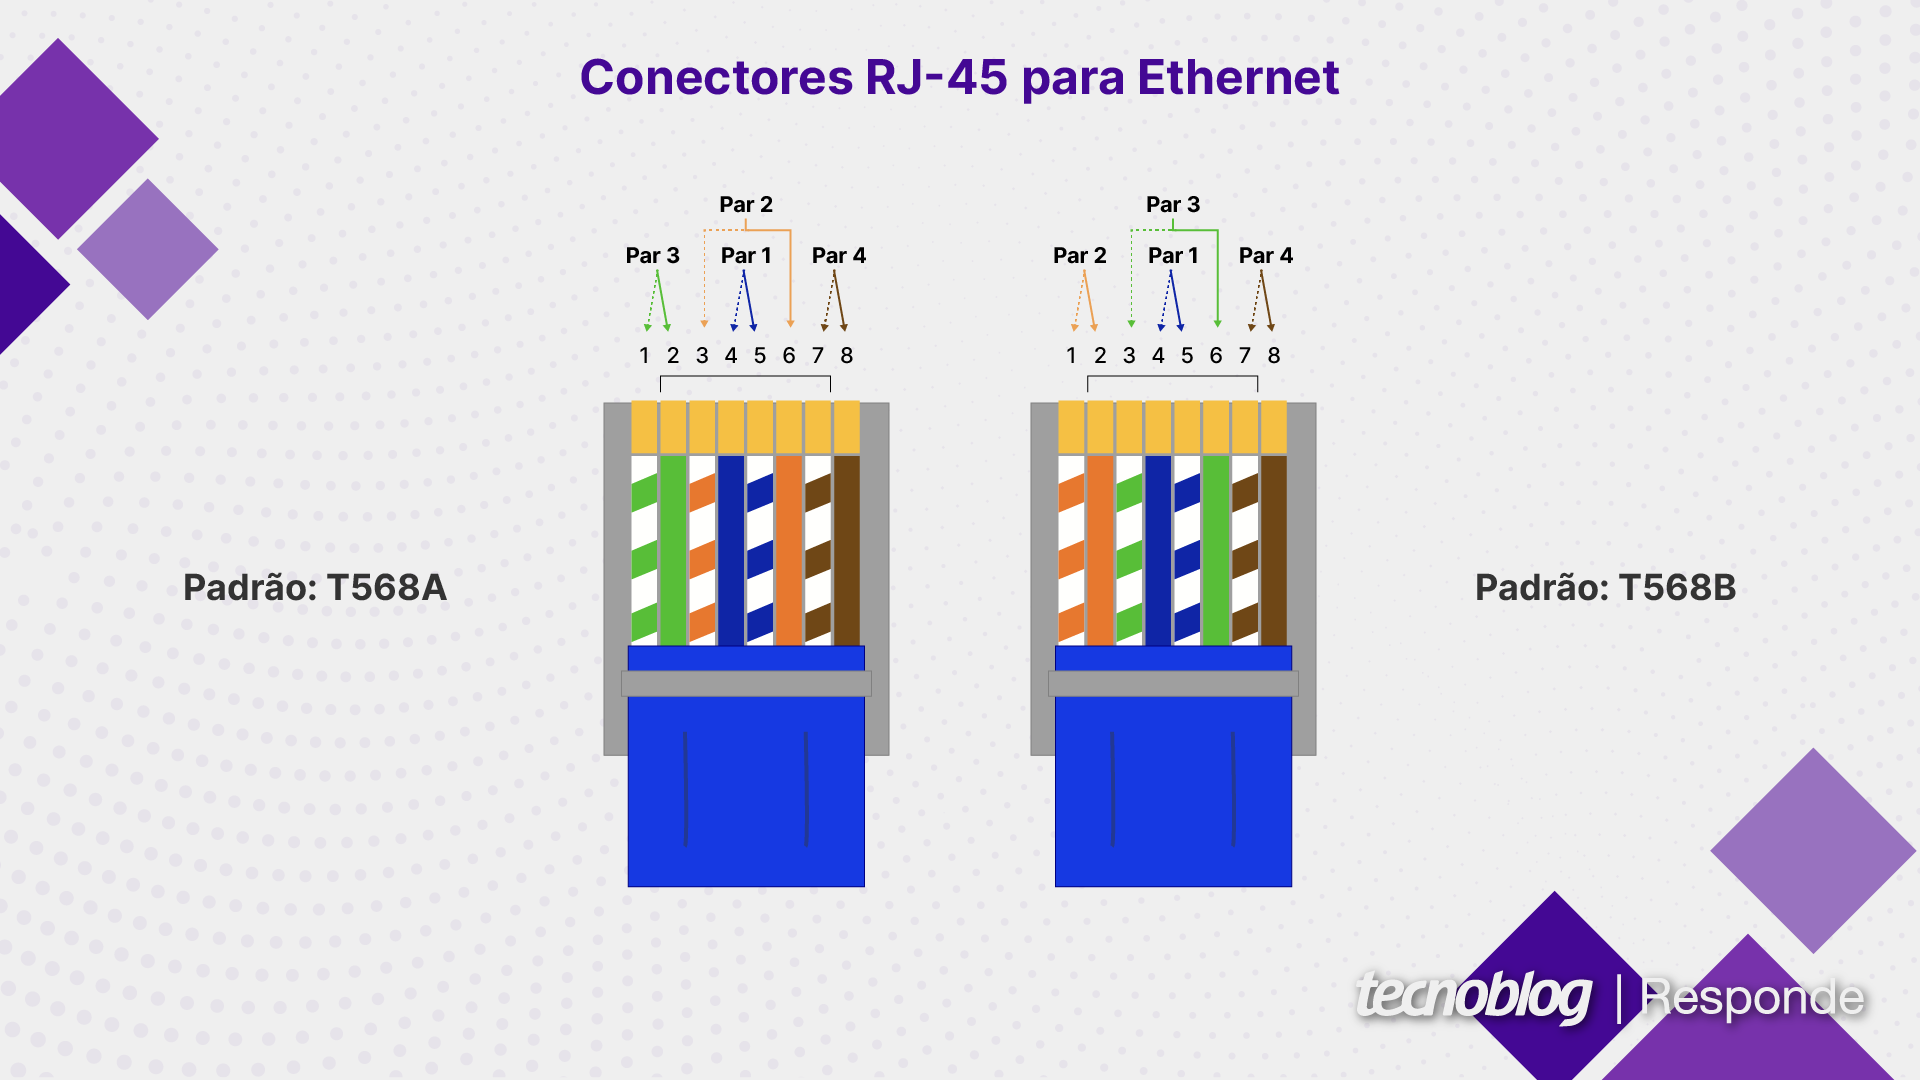 Tudo Sobre Cabos Ethernet: A Escolha Certa para Sua Rede, by Lojapm